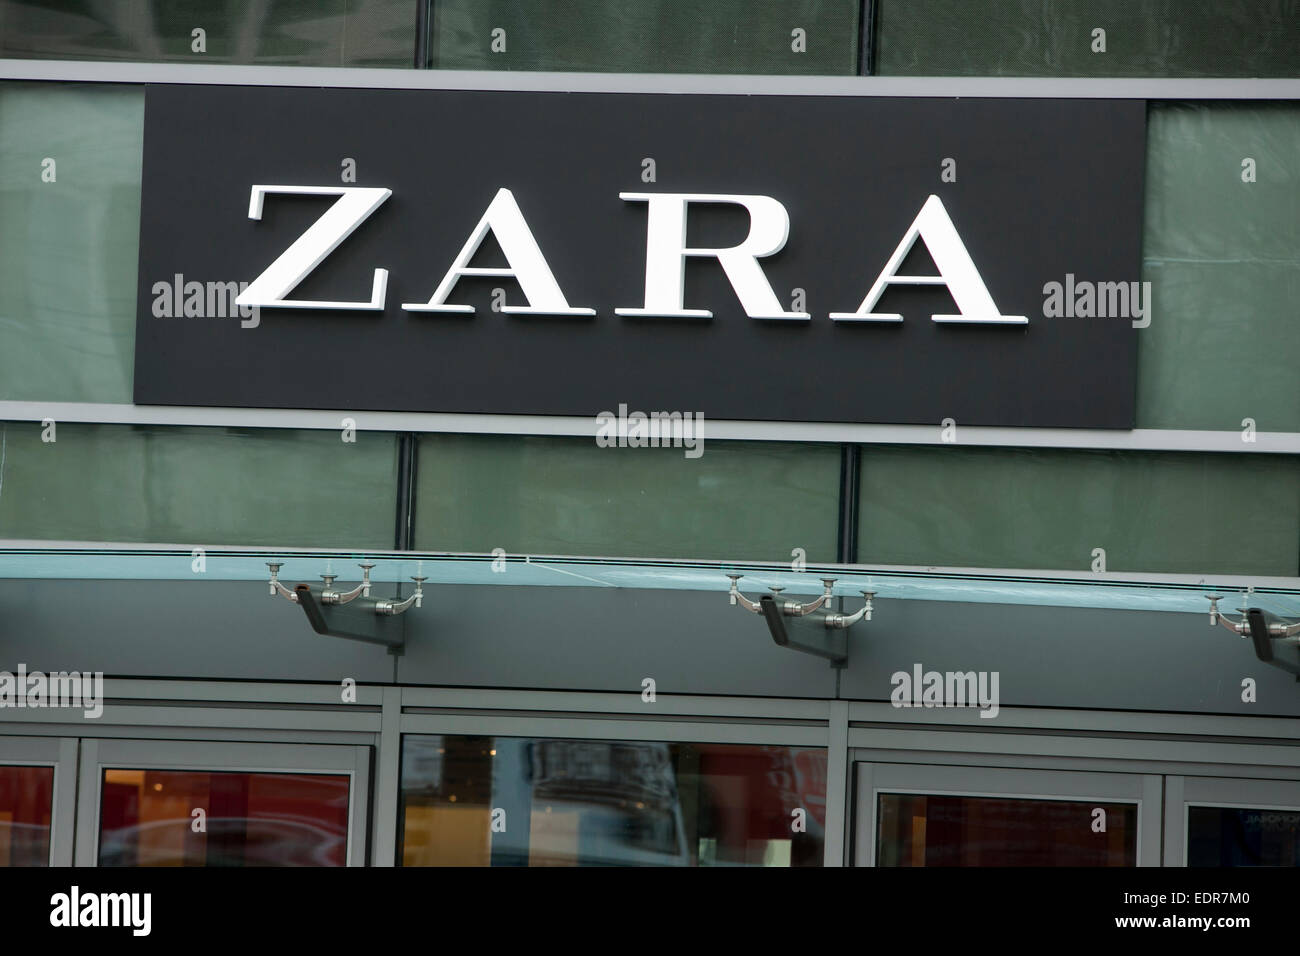 A Zara clothing retail store in downtown Seattle, Washington. Stock Photo